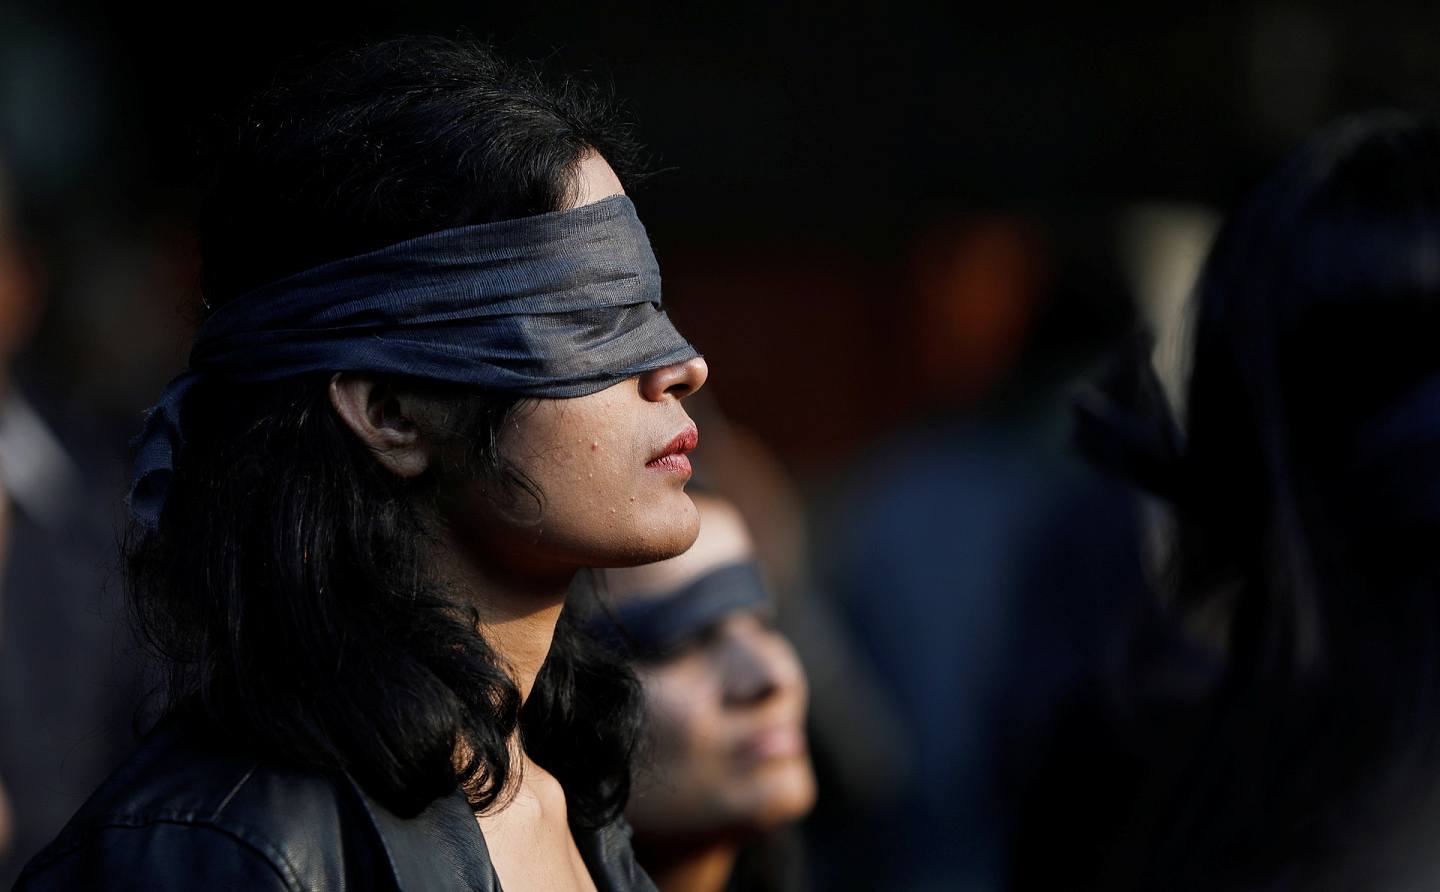 2019年12月4日，印度北方邦（Uttar Pradesh）一名强奸案的受害人前往法院途中，惨遭疑犯等人放火，全身烧伤，至12月6日终于不治，与世长辞。在首都新德里，12月7日有群众用布蒙眼上街示威。（路透社）